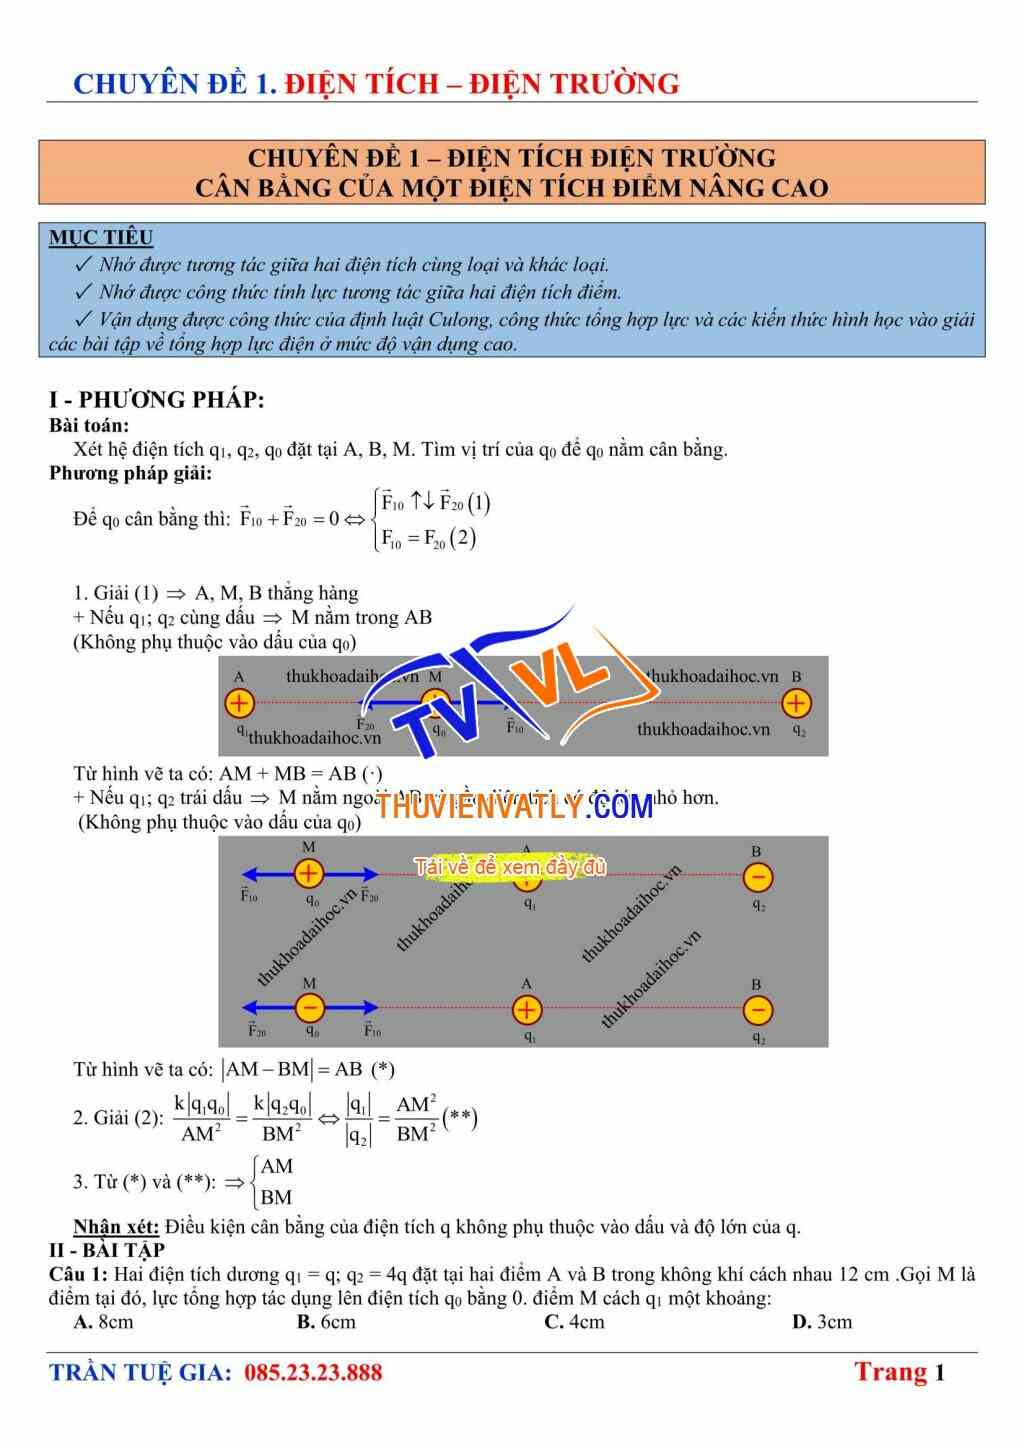 Cân bằng của một Điện tích điểm (Nâng cao) - Chương 1 (Điện tích Điện trường) - Vật lý 11